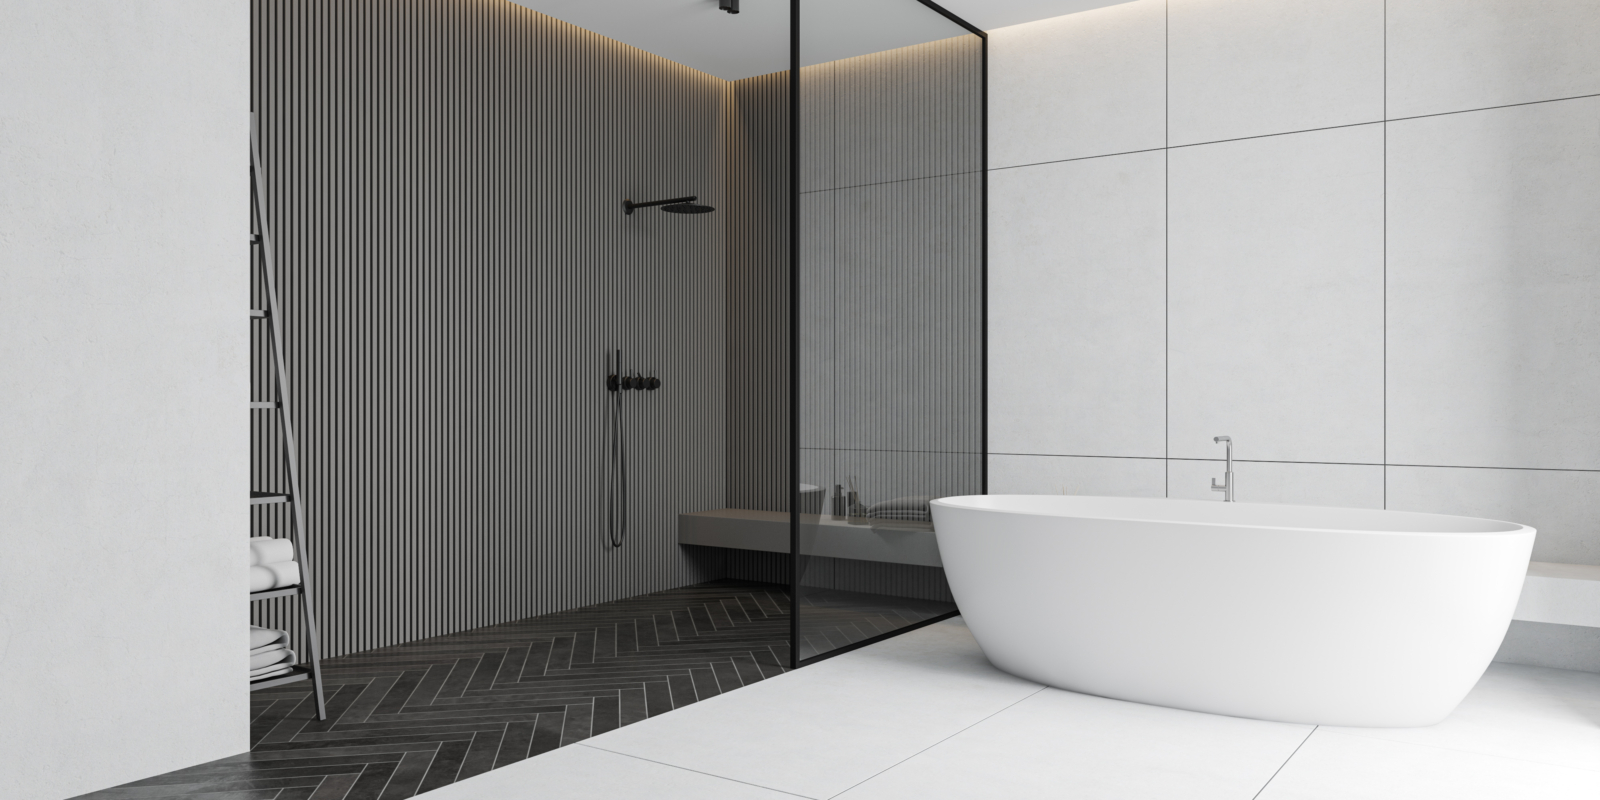 Geräumiges Badezimmer mit freistehender ovaler Badewanne, weiße und graue Wandfliesen